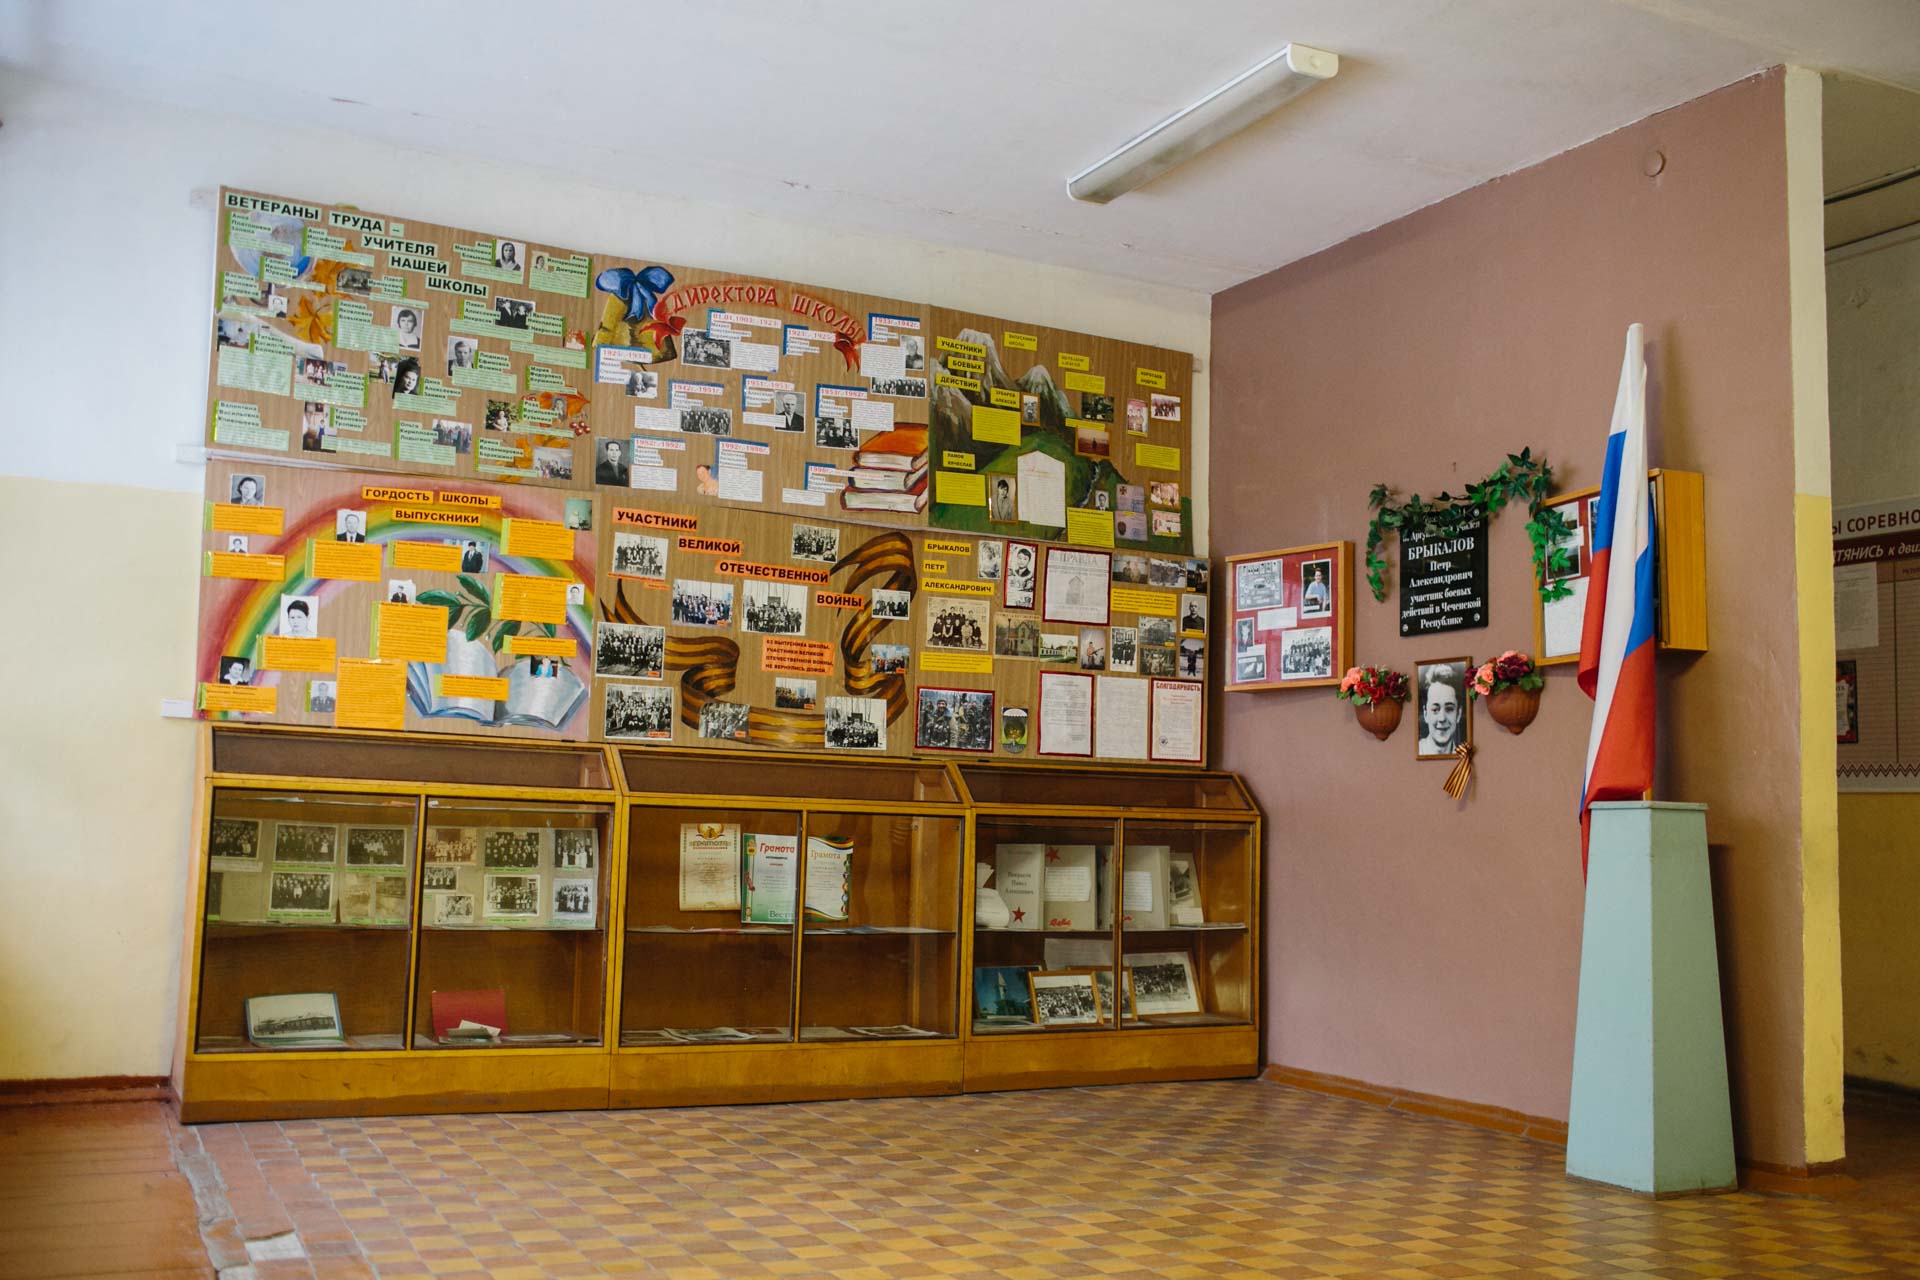 Экспонаты музея школы